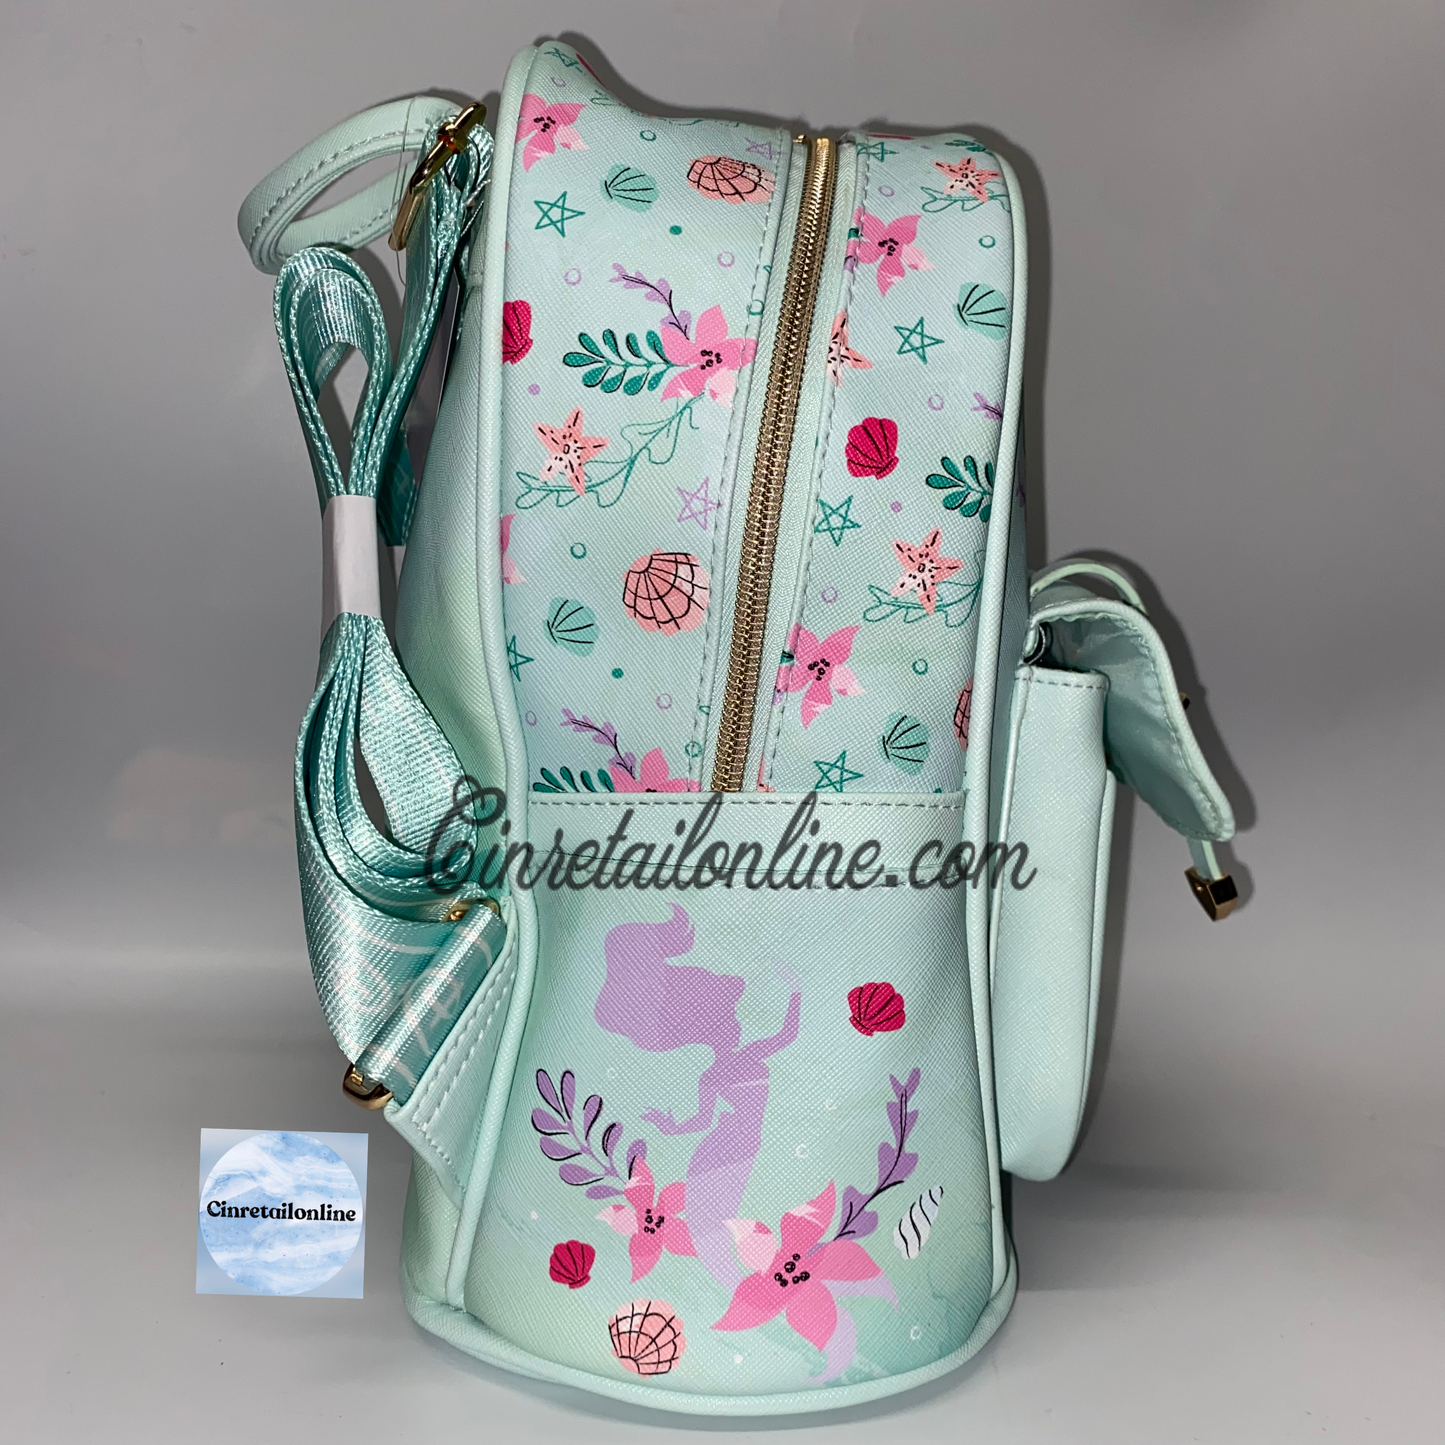 Ariel Disney backpack (little mermaid)